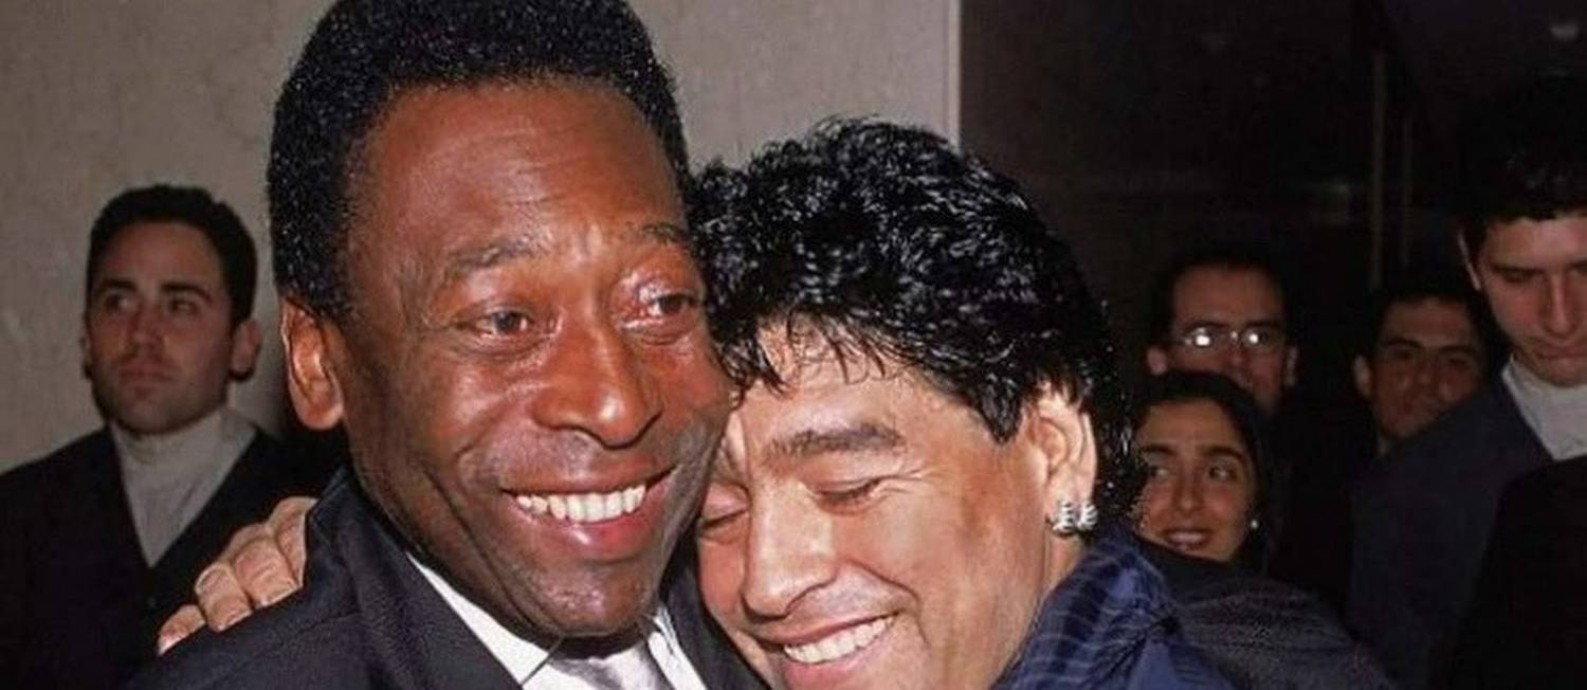 Pelé e Maradona cultivaram amizade próxima Foto: Twitter/Pelé